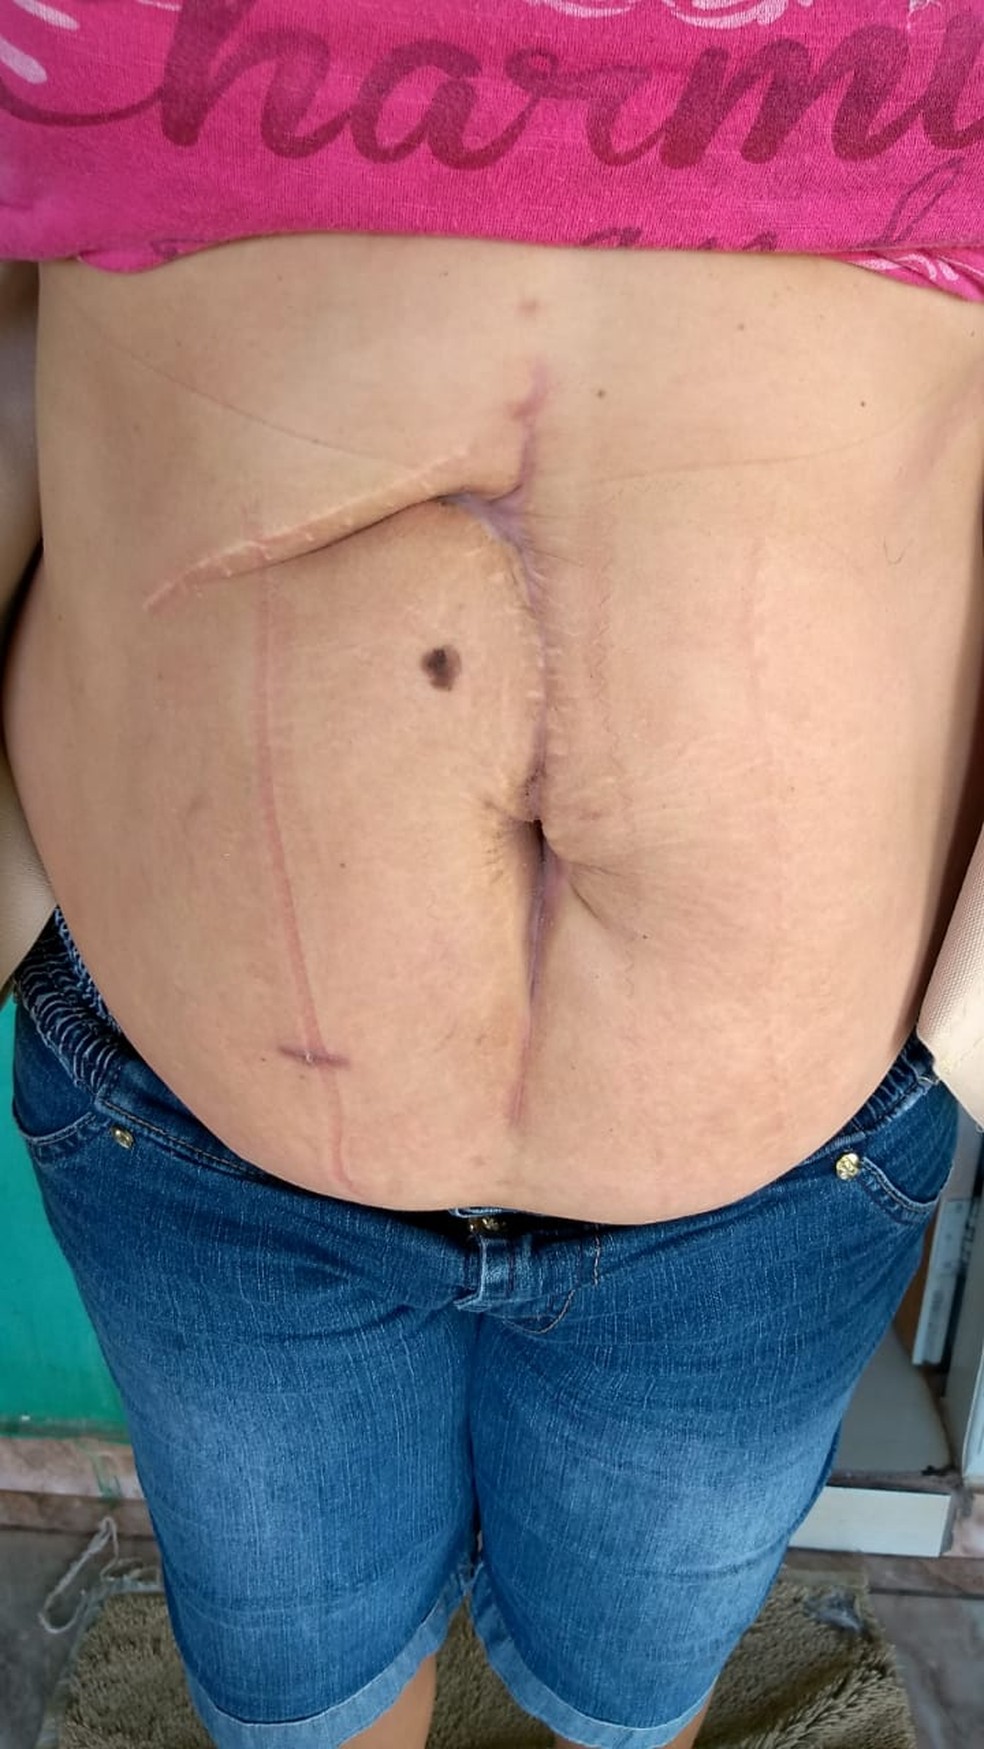 Sirlei mostra a cicatriz da cirurgia  Foto: Arquivo Pessoal